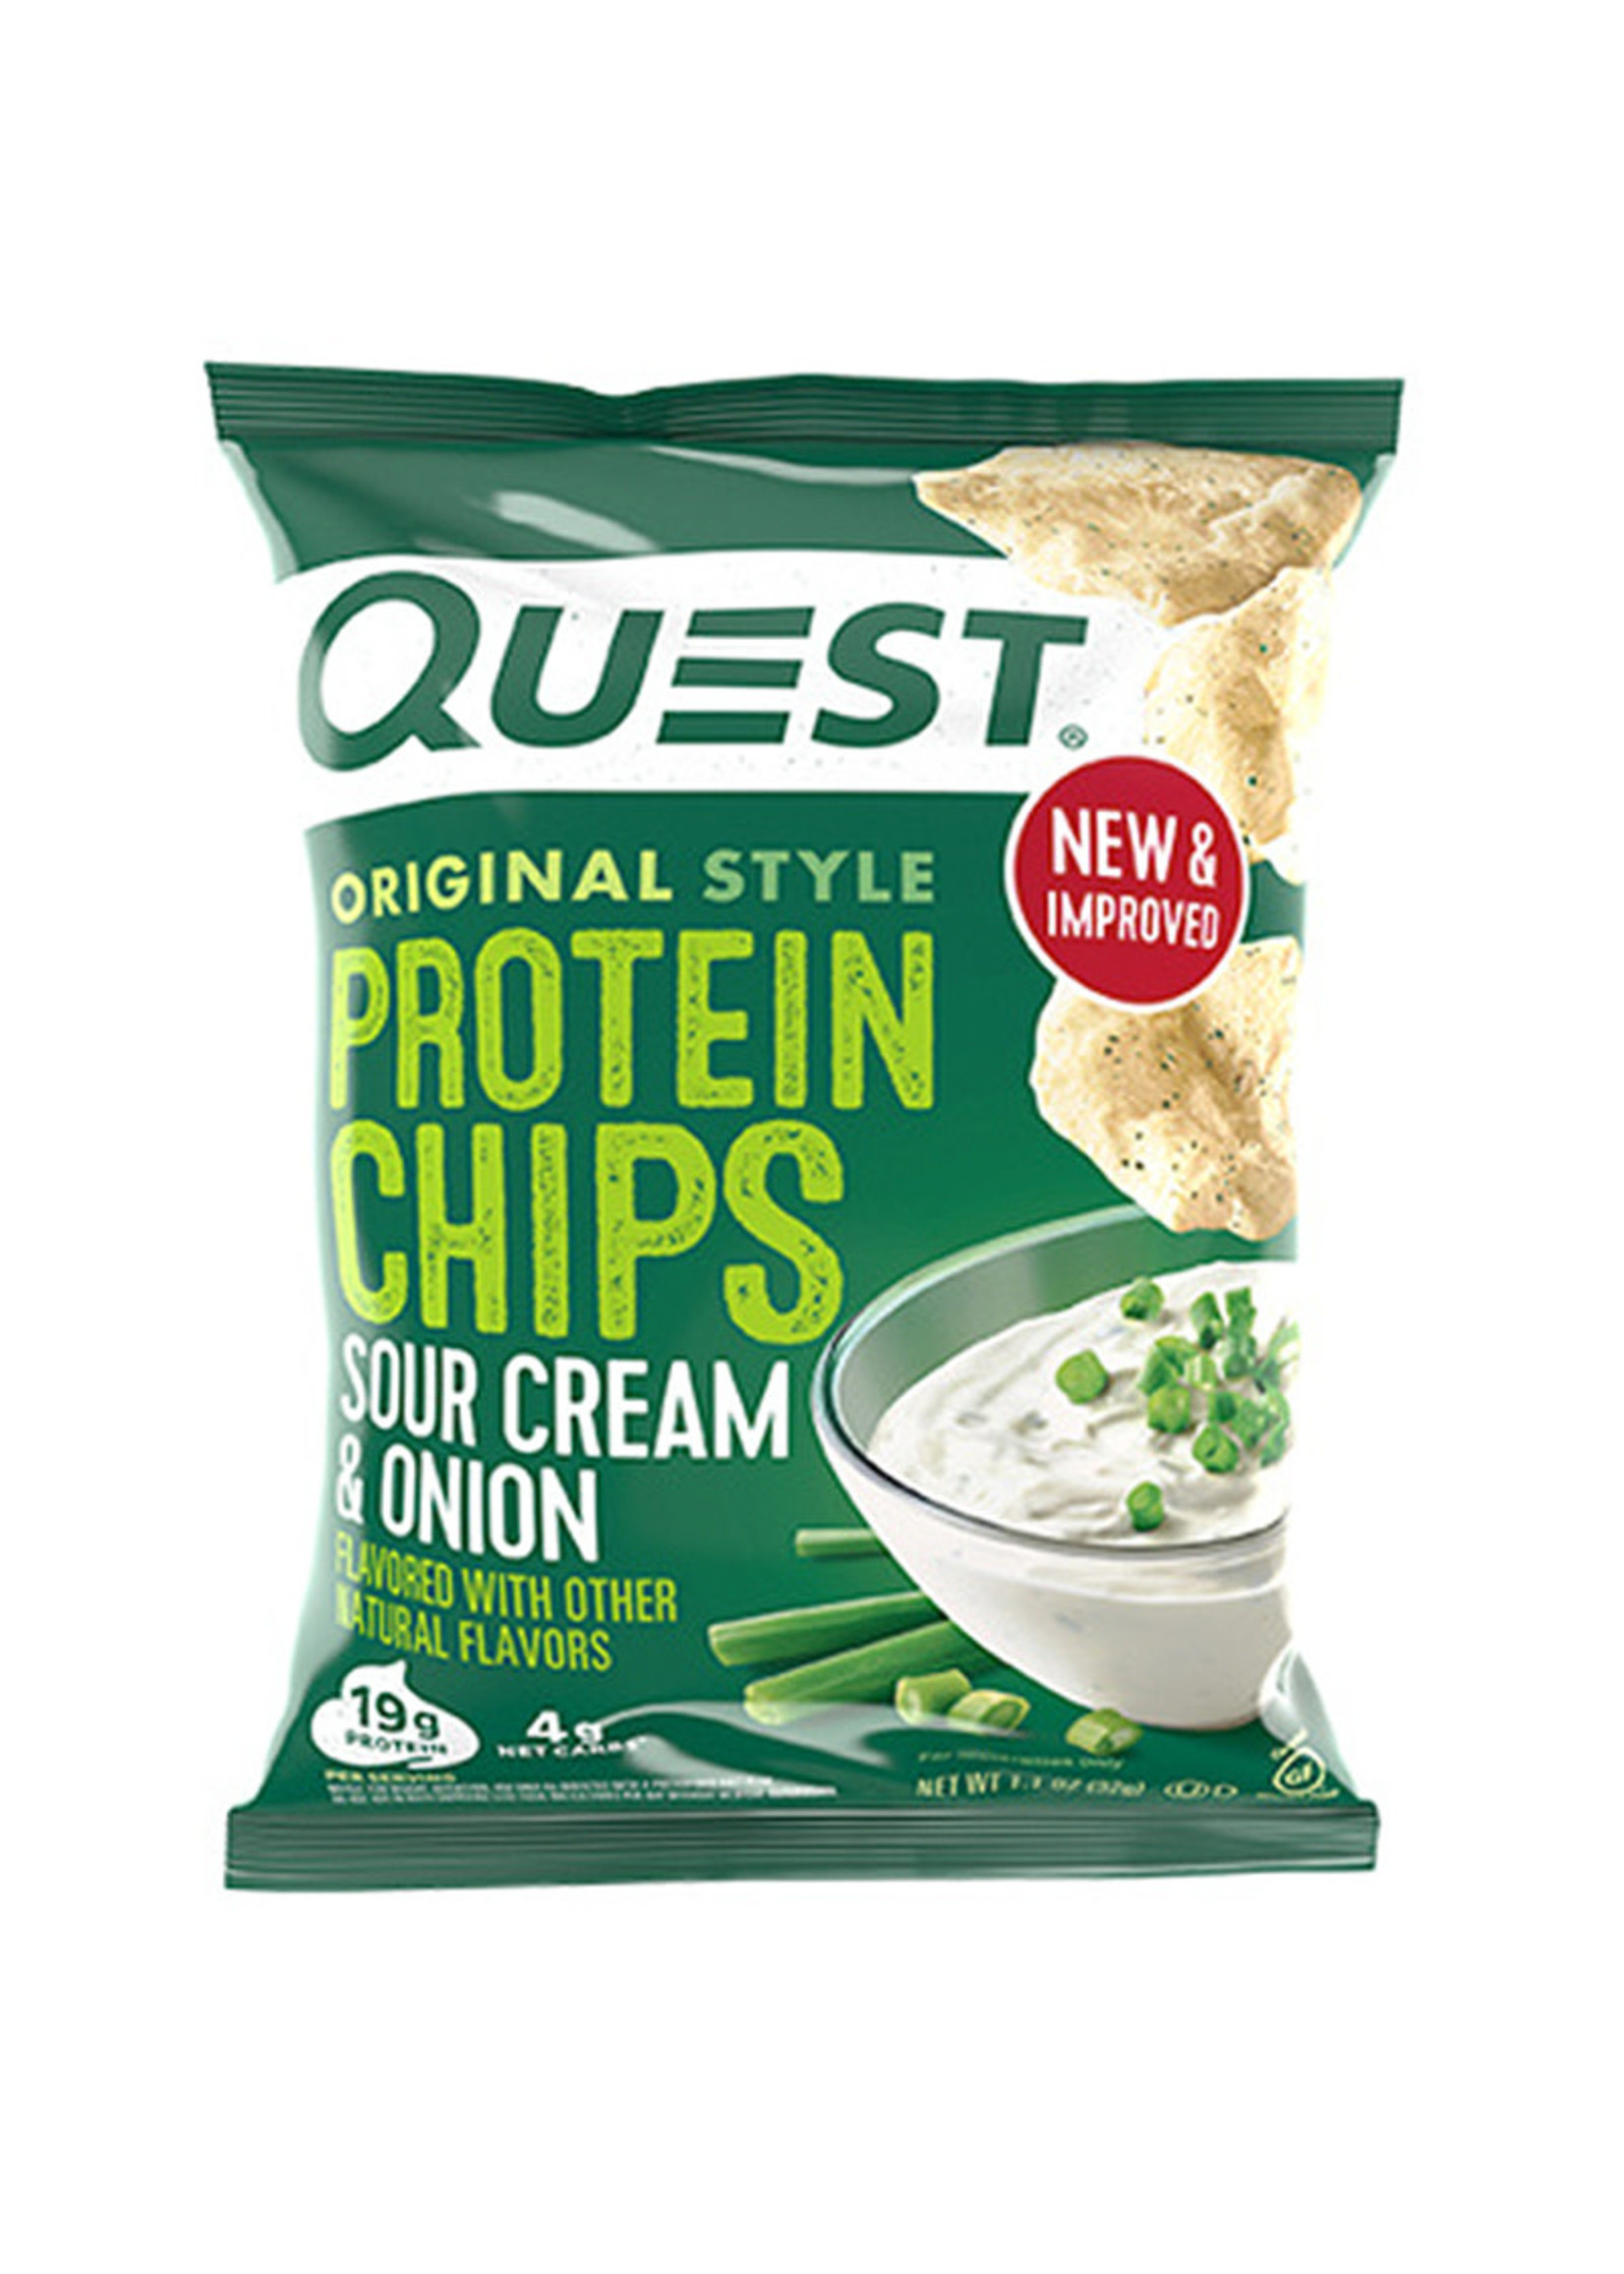 Quest Nutrition Quest - Chips, Sour Cream & Onion (32g)